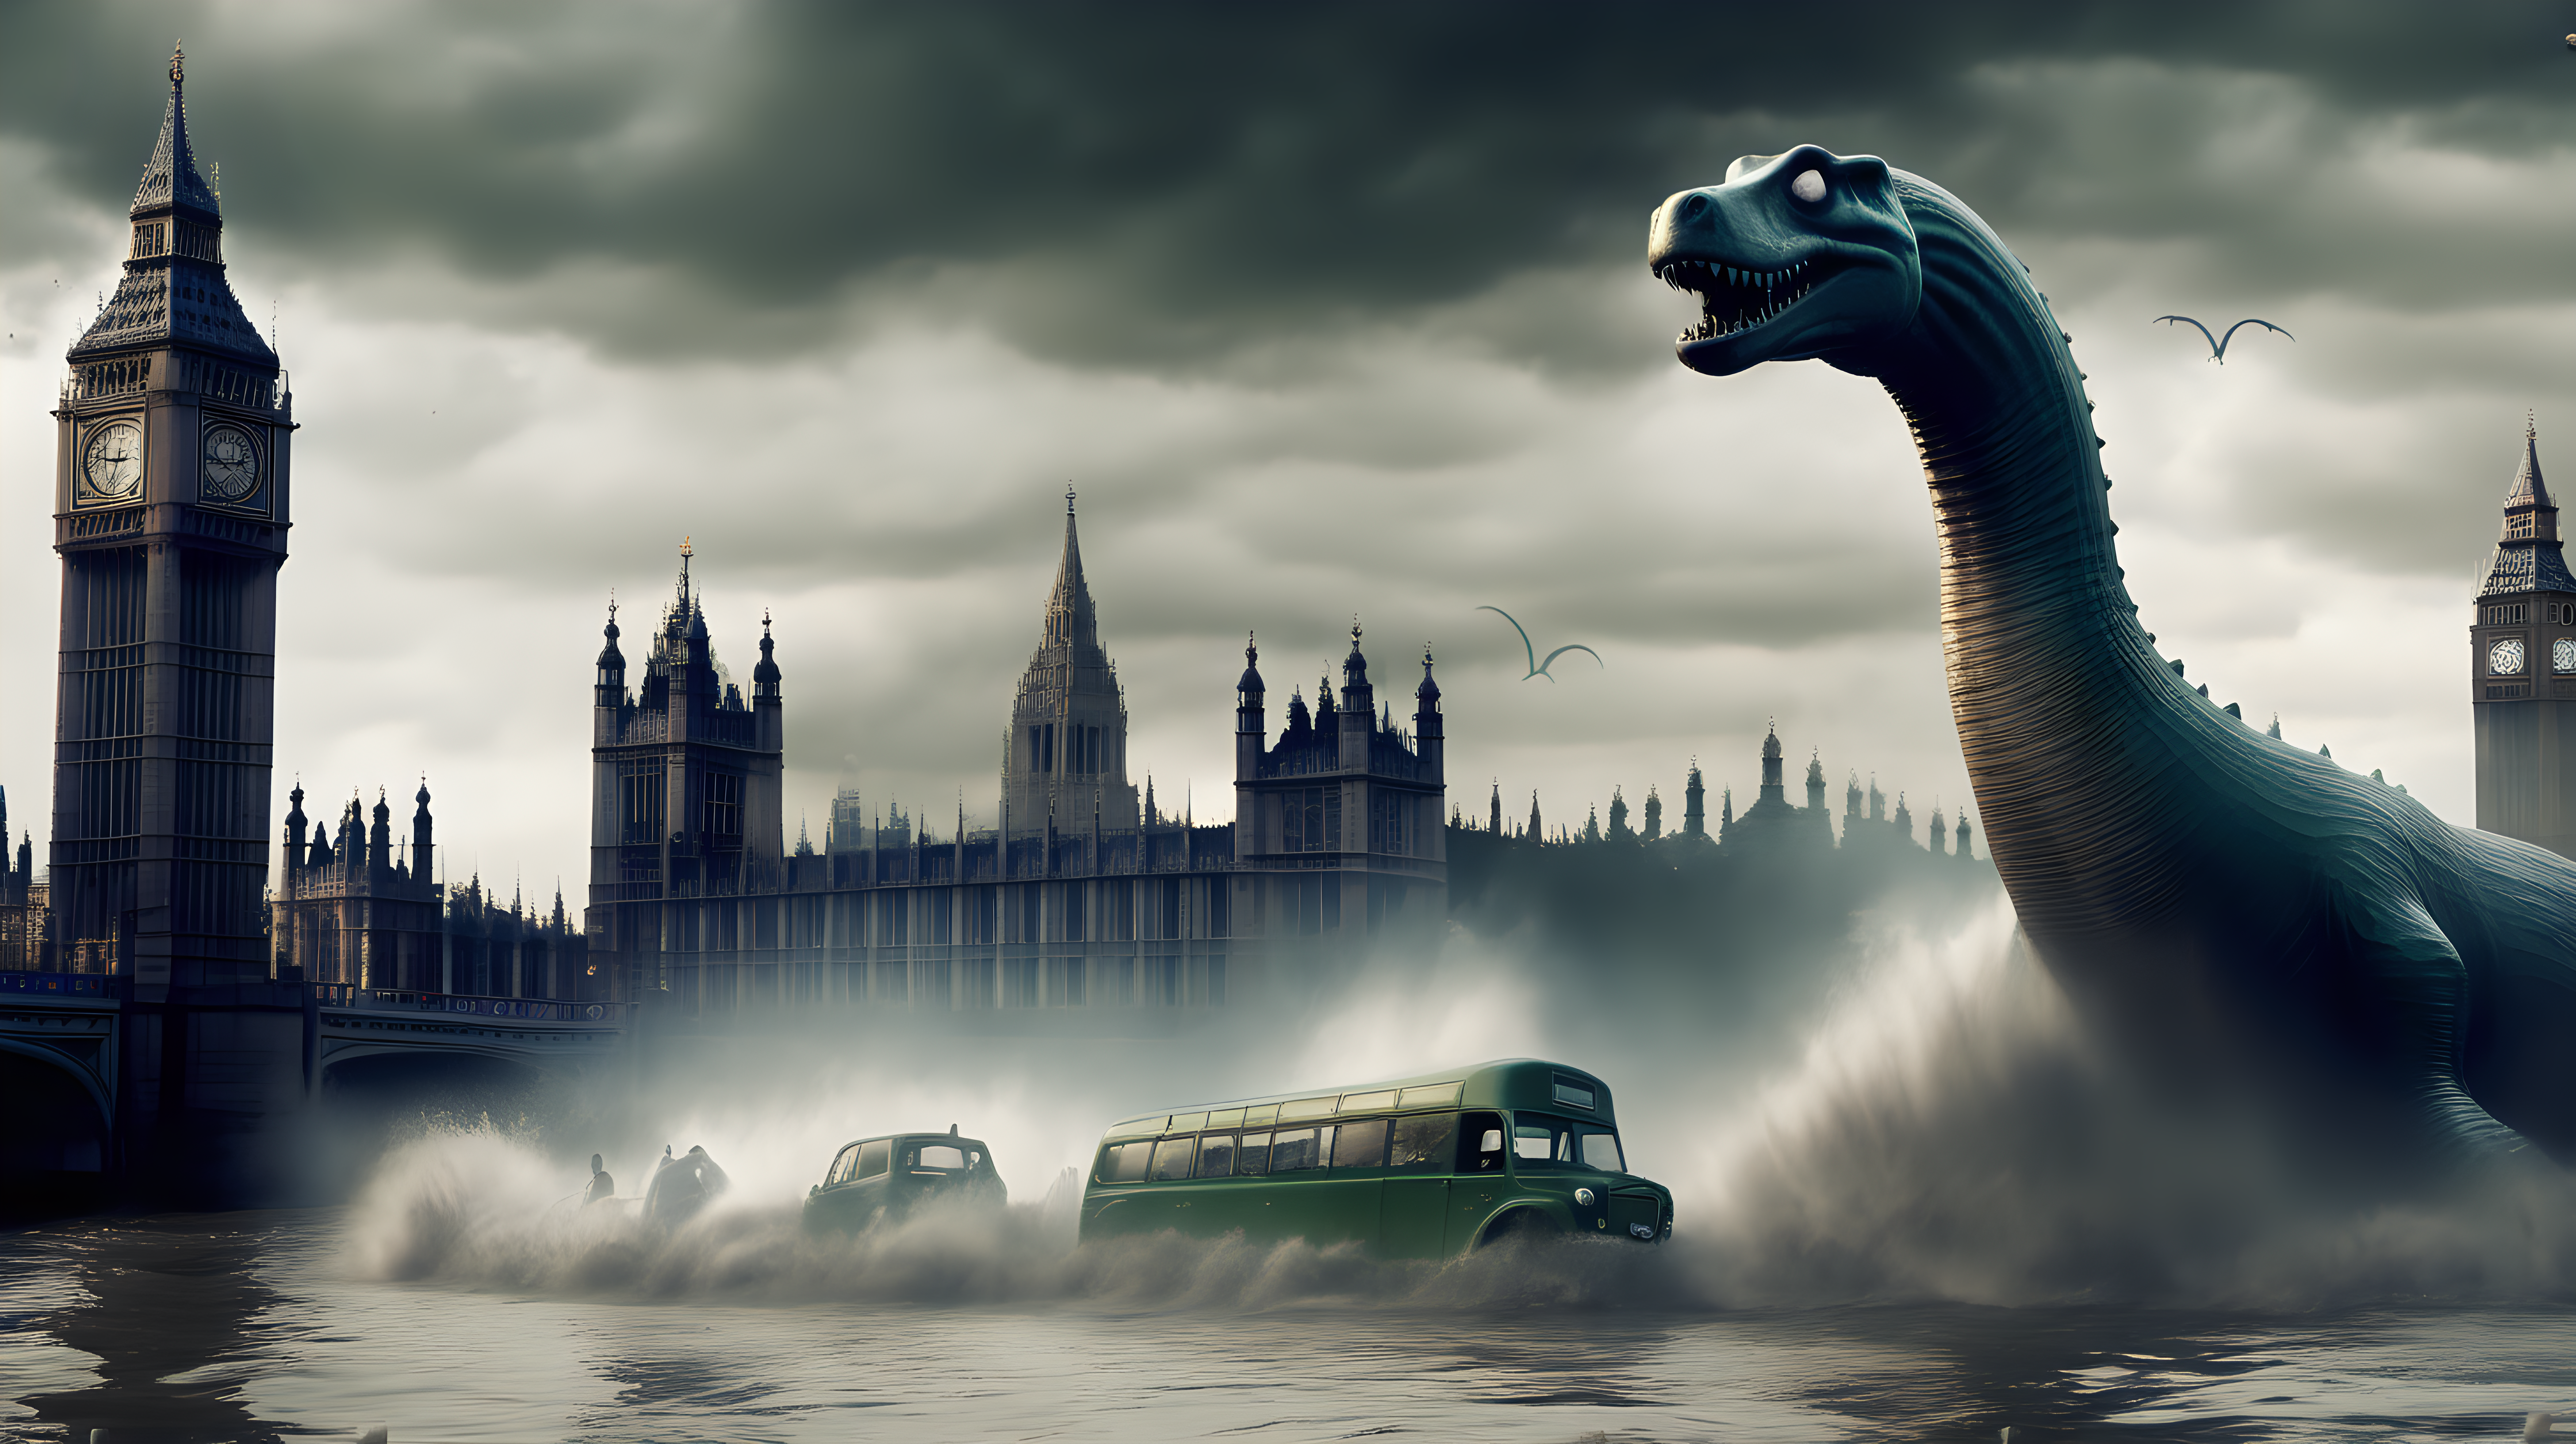 Loch Ness monster destroying London